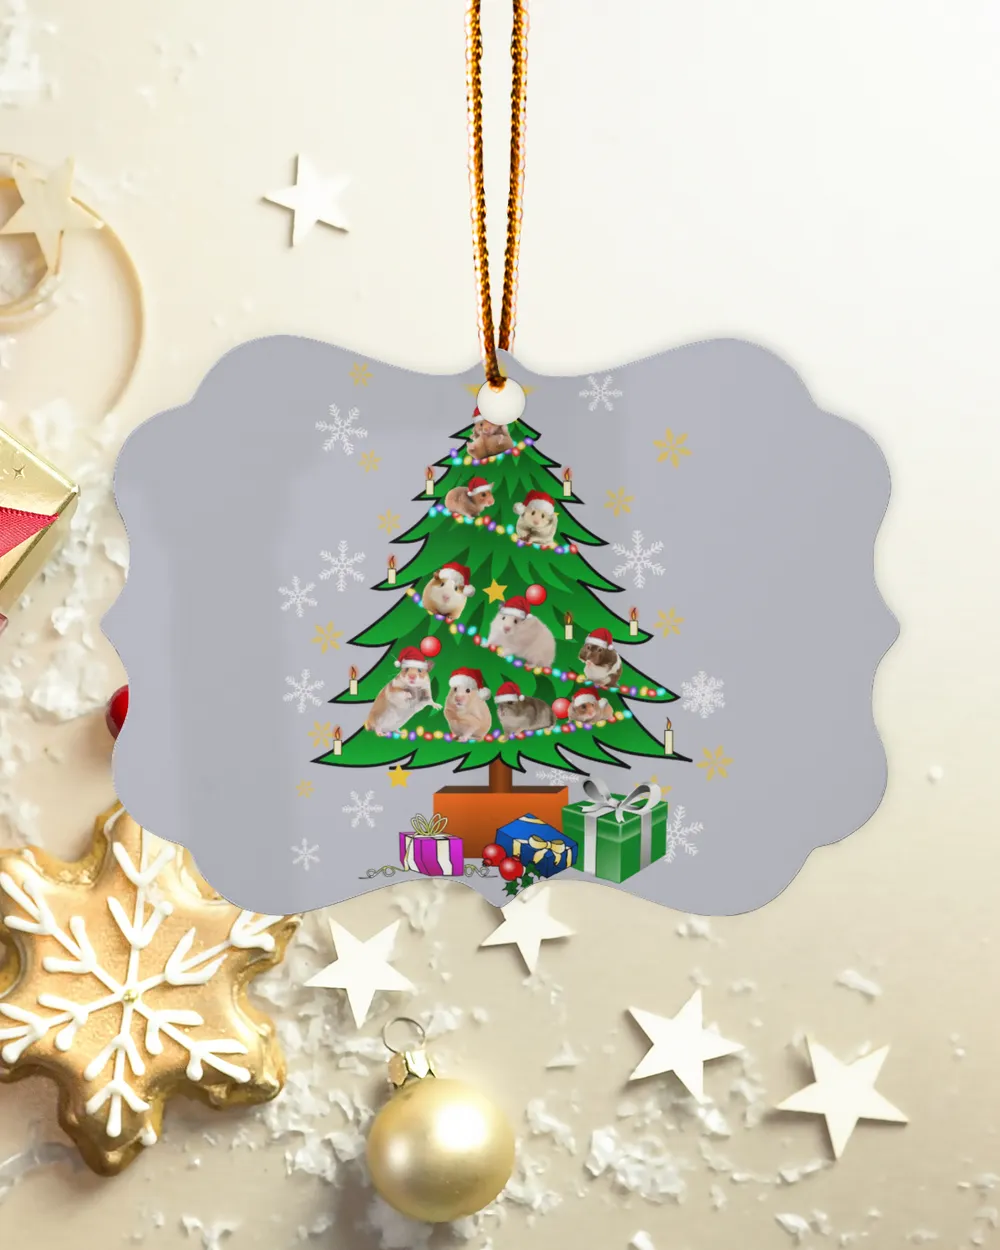 Hamster Christmas Tree Ornament, Christmas gift box candles